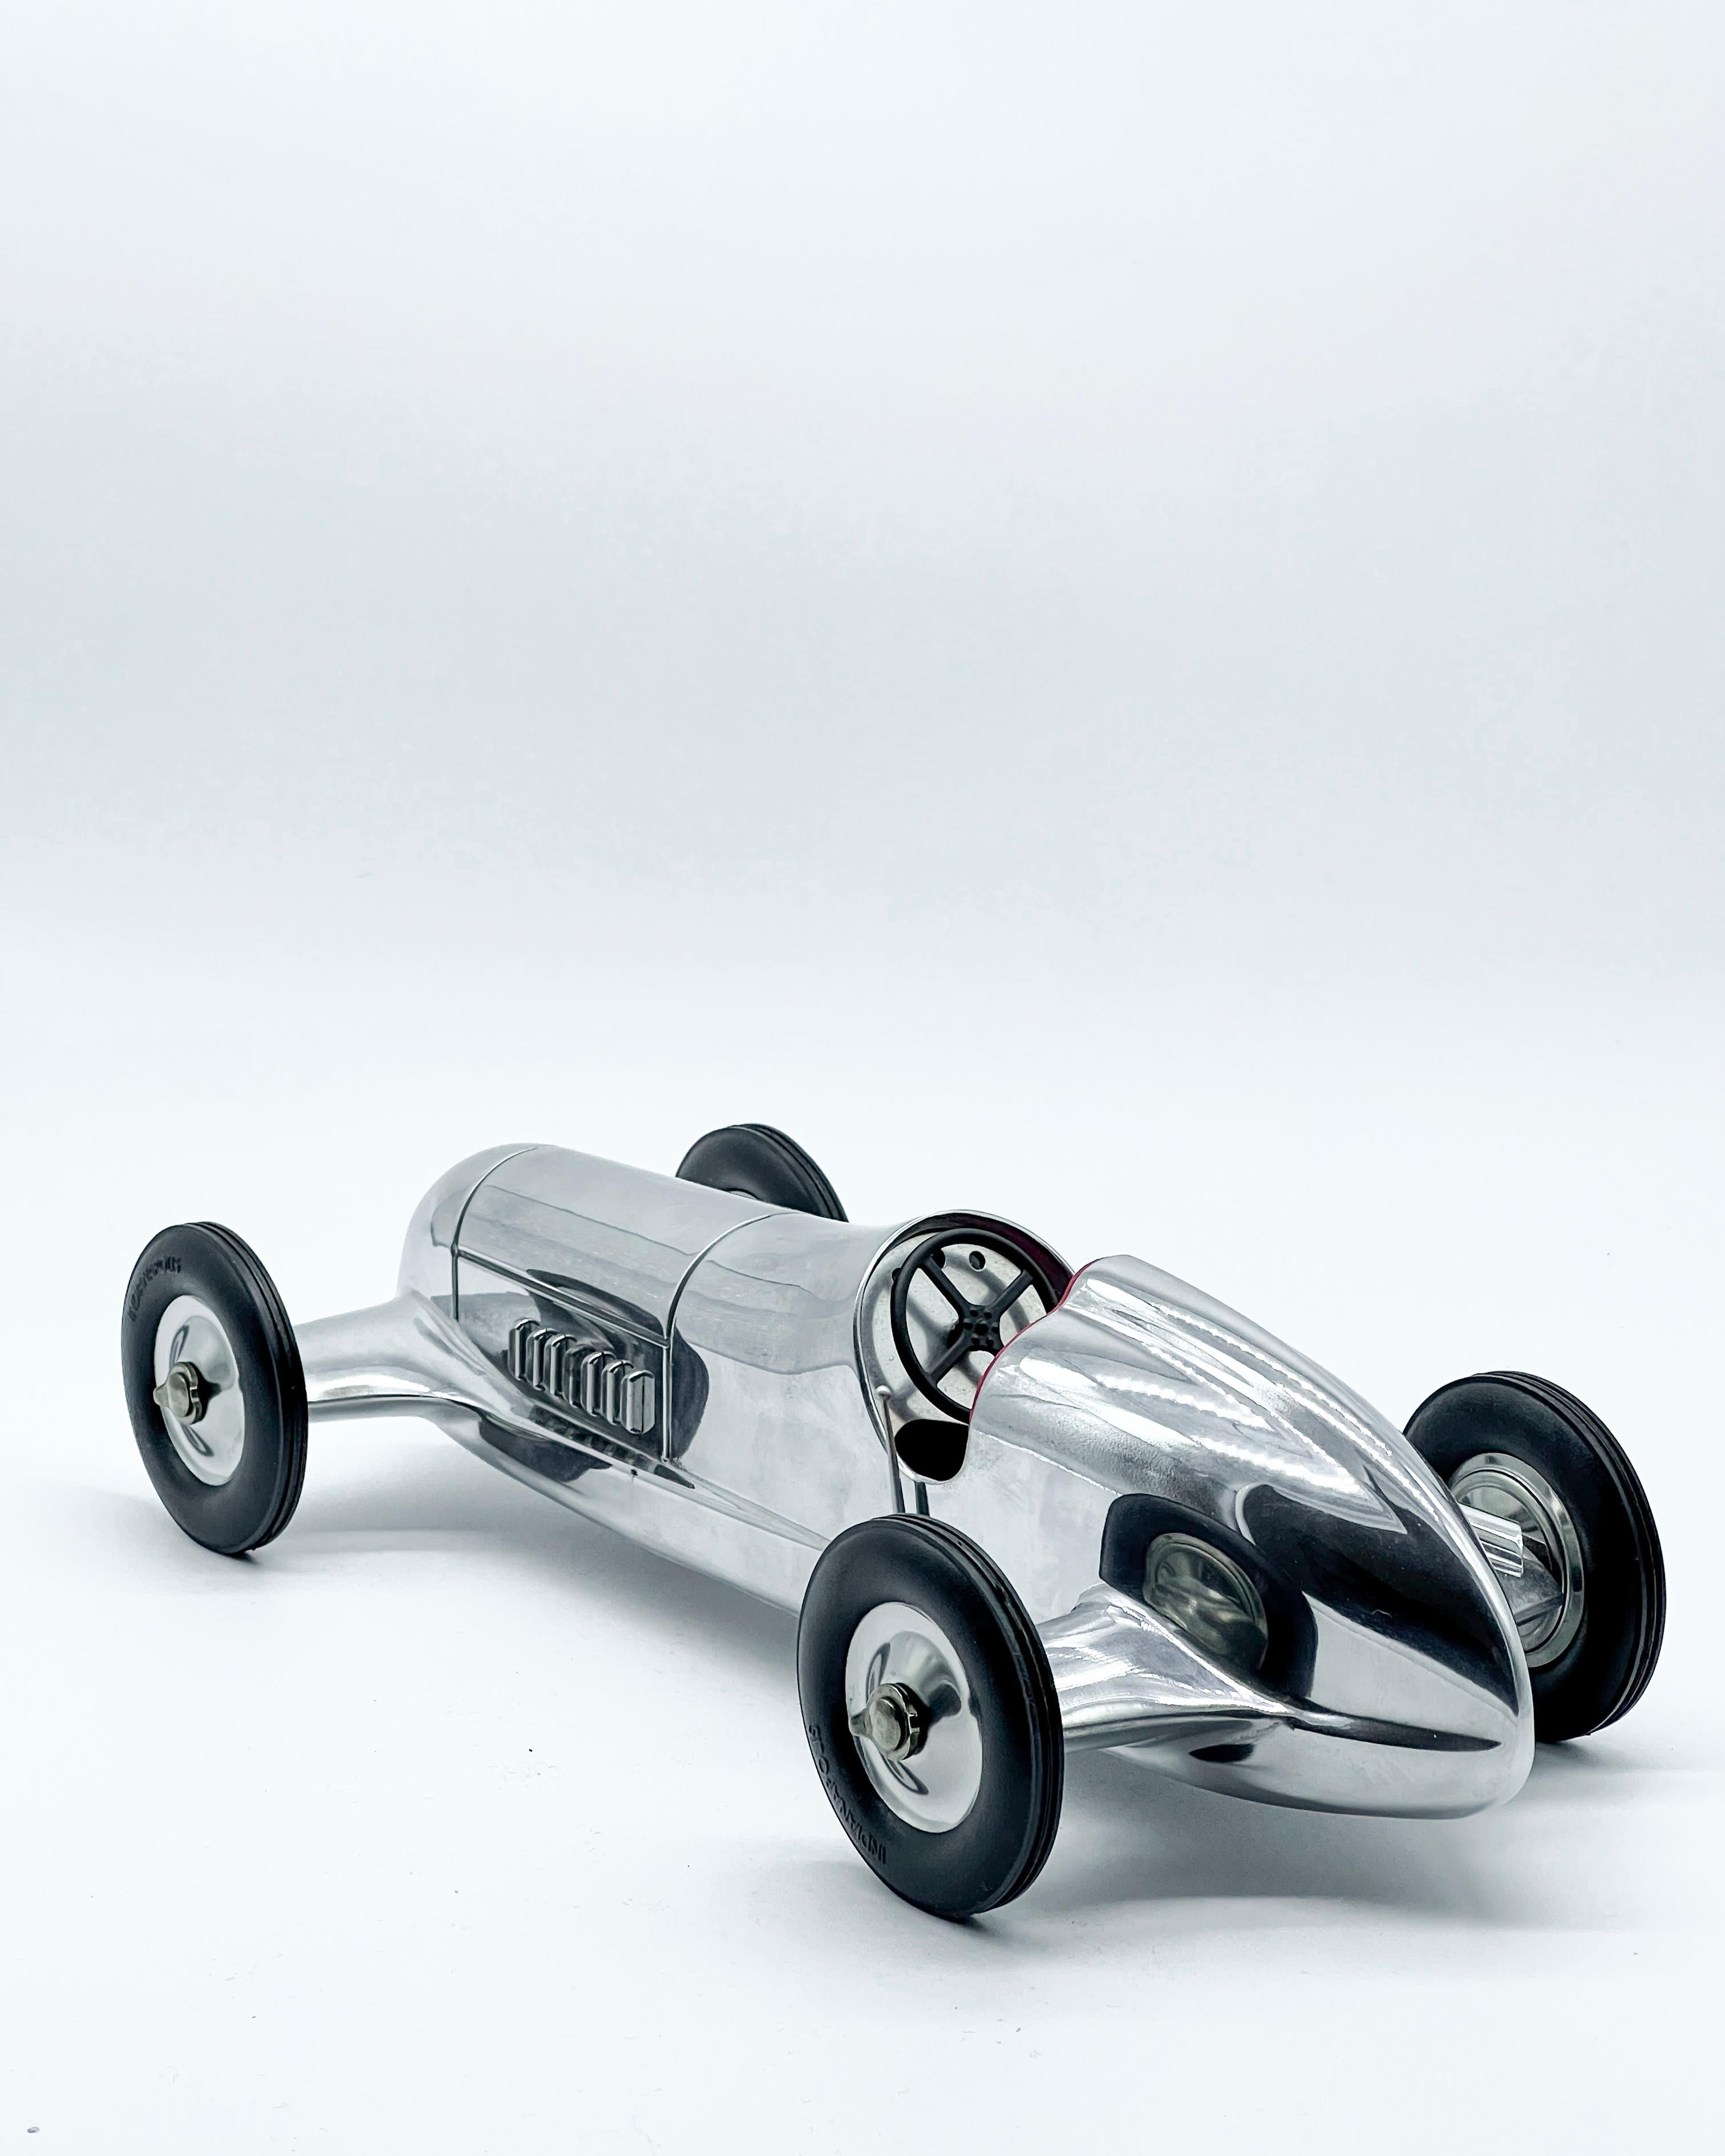 Superbe reproduction contemporaine d'une voiture de course des années 1930. La carrosserie aérodynamique, les tuyaux d'échappement, les roues et le tableau de bord sont tous fidèlement reproduits et très détaillés.

D'une longueur de trente